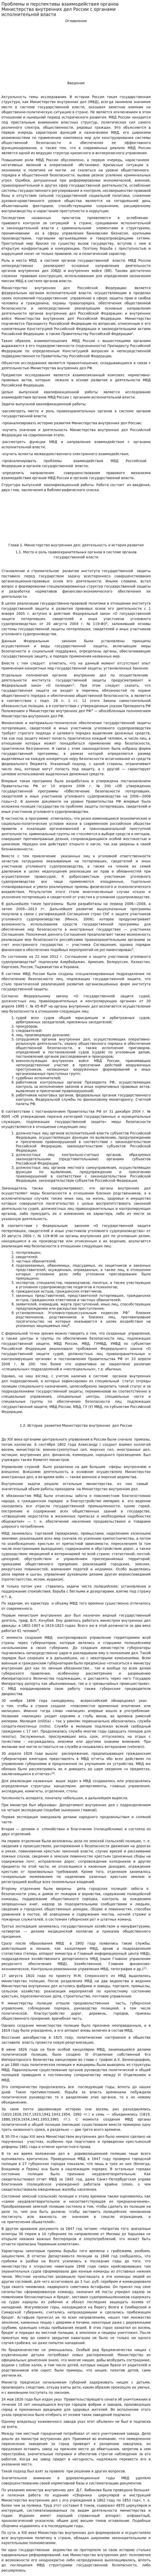 Проблемы и перспективы взаимодействия органов Министерства внутренних дел России с органами исполнительной власти